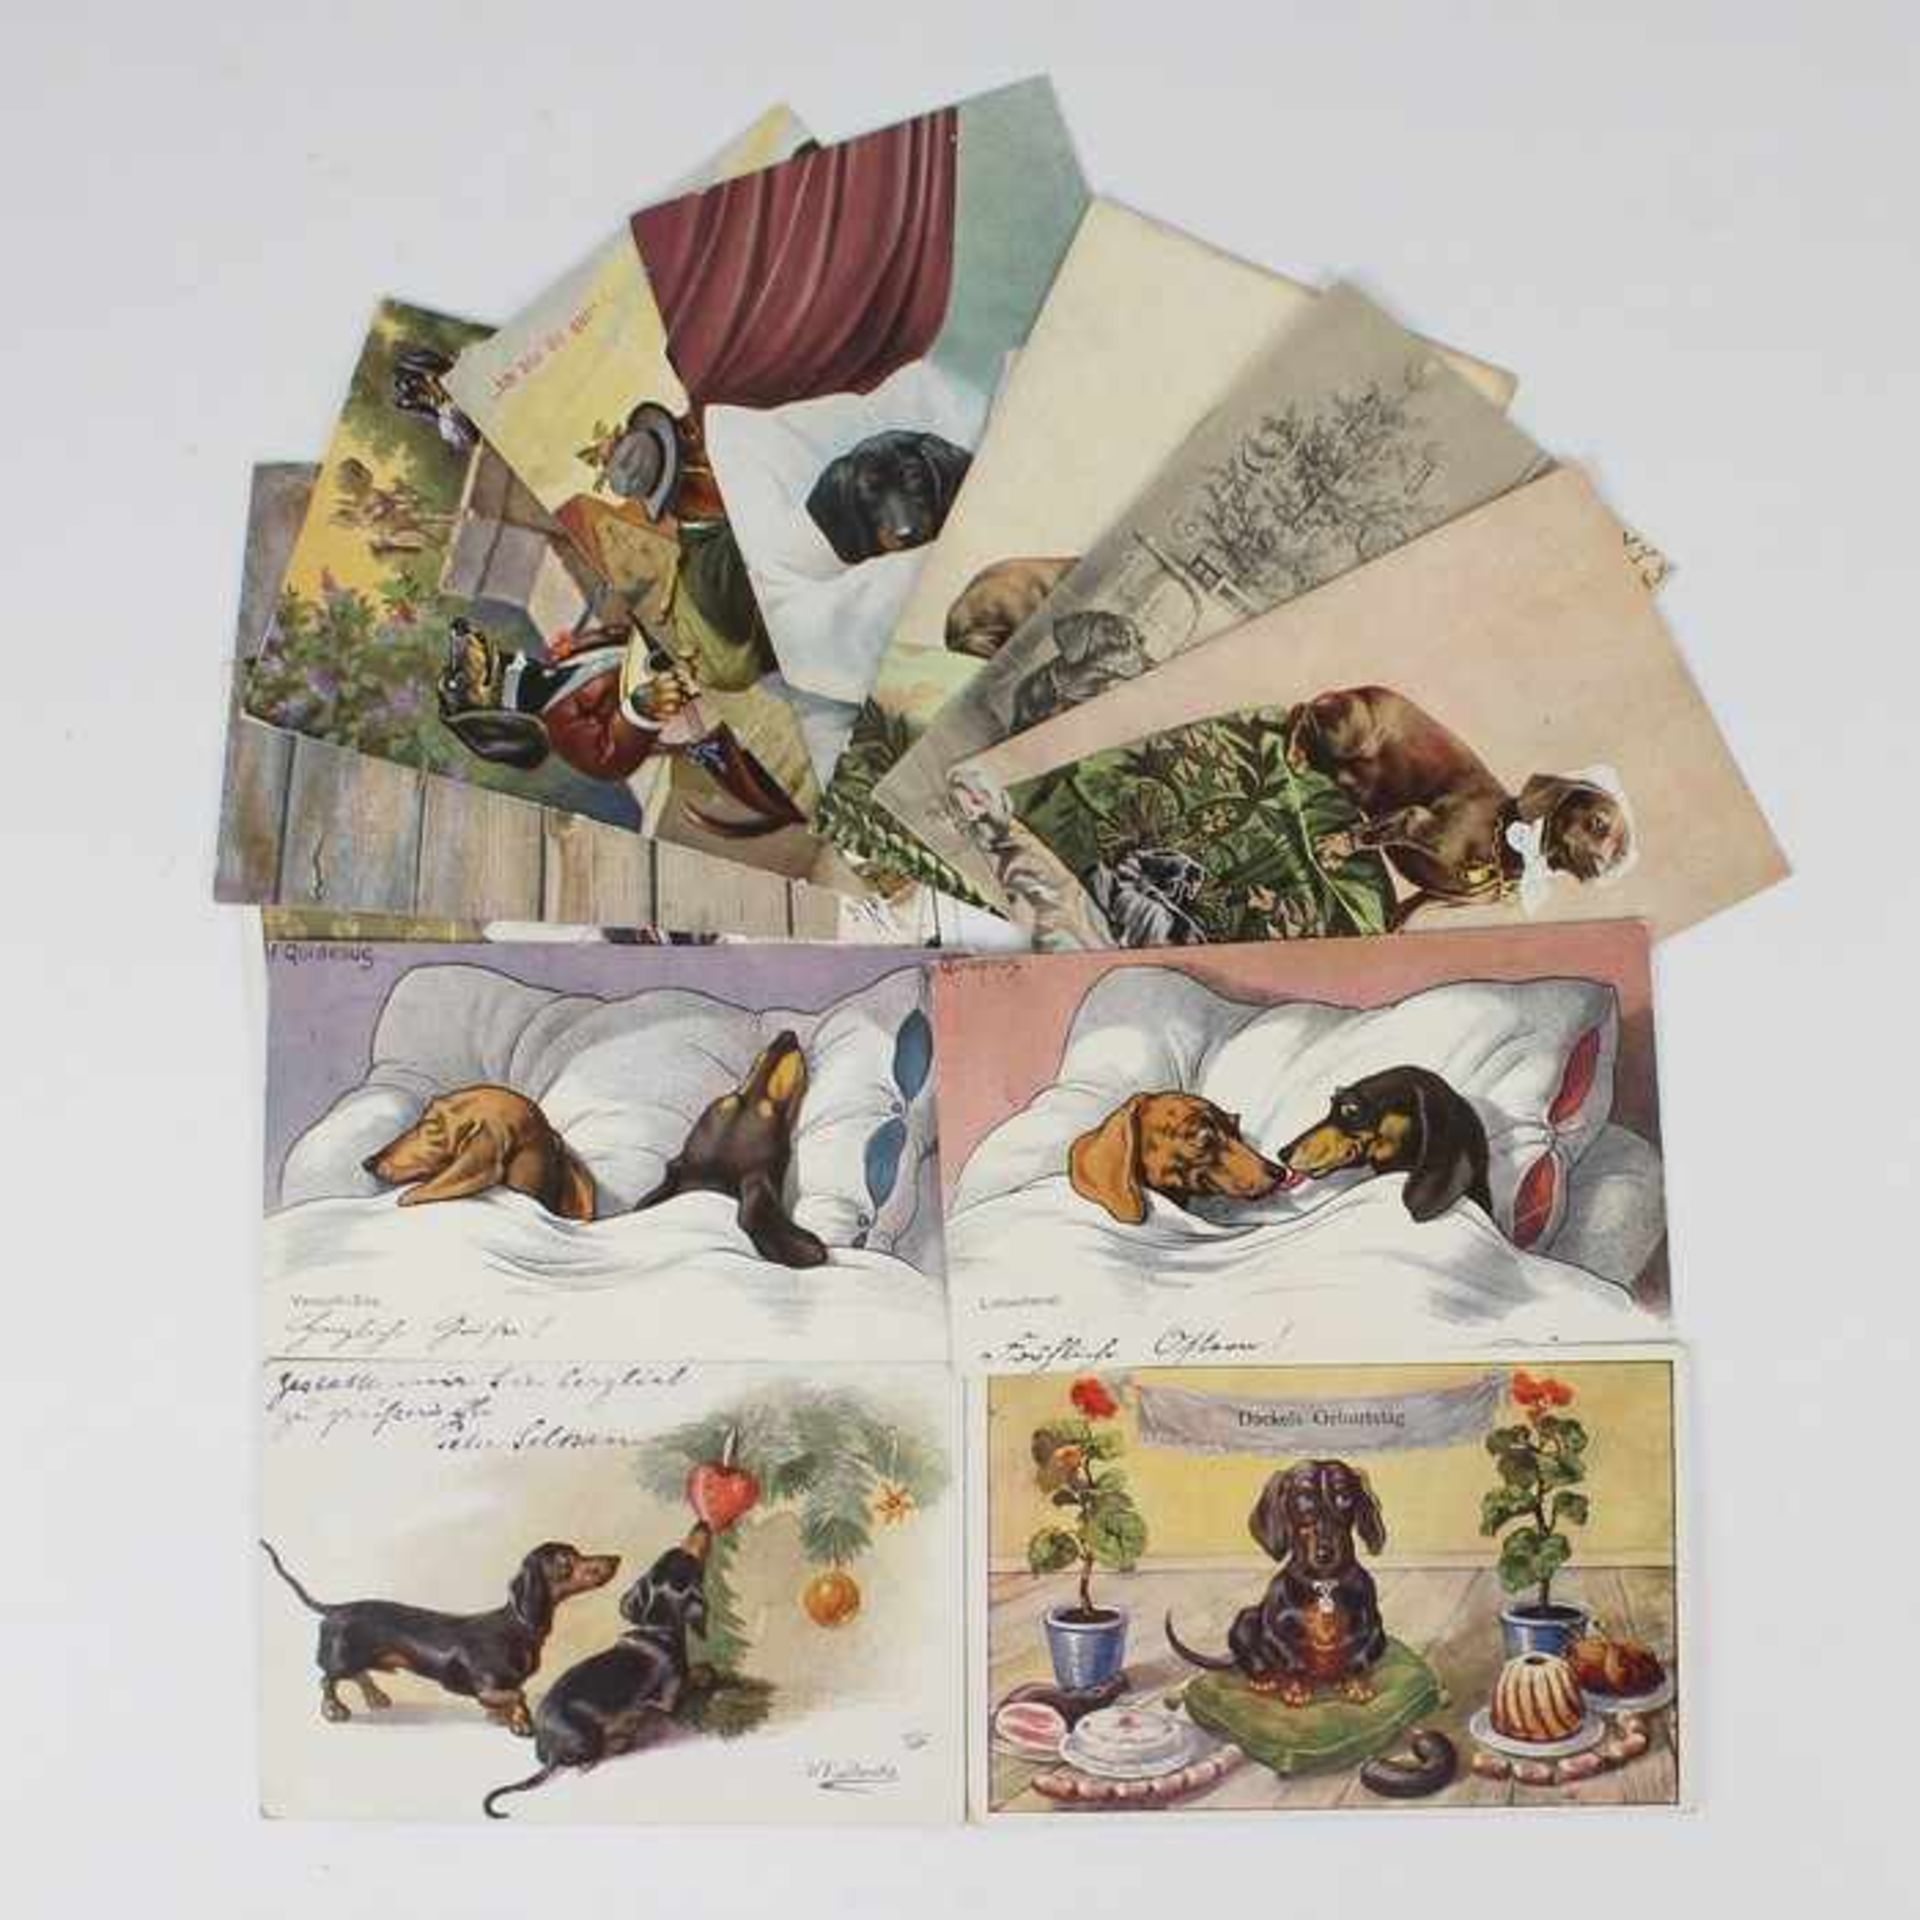 Postkartenum 1940, 12 St., farbig lithografiert, Dackeldarstellungen, 2 PK v. F. Quidenus,